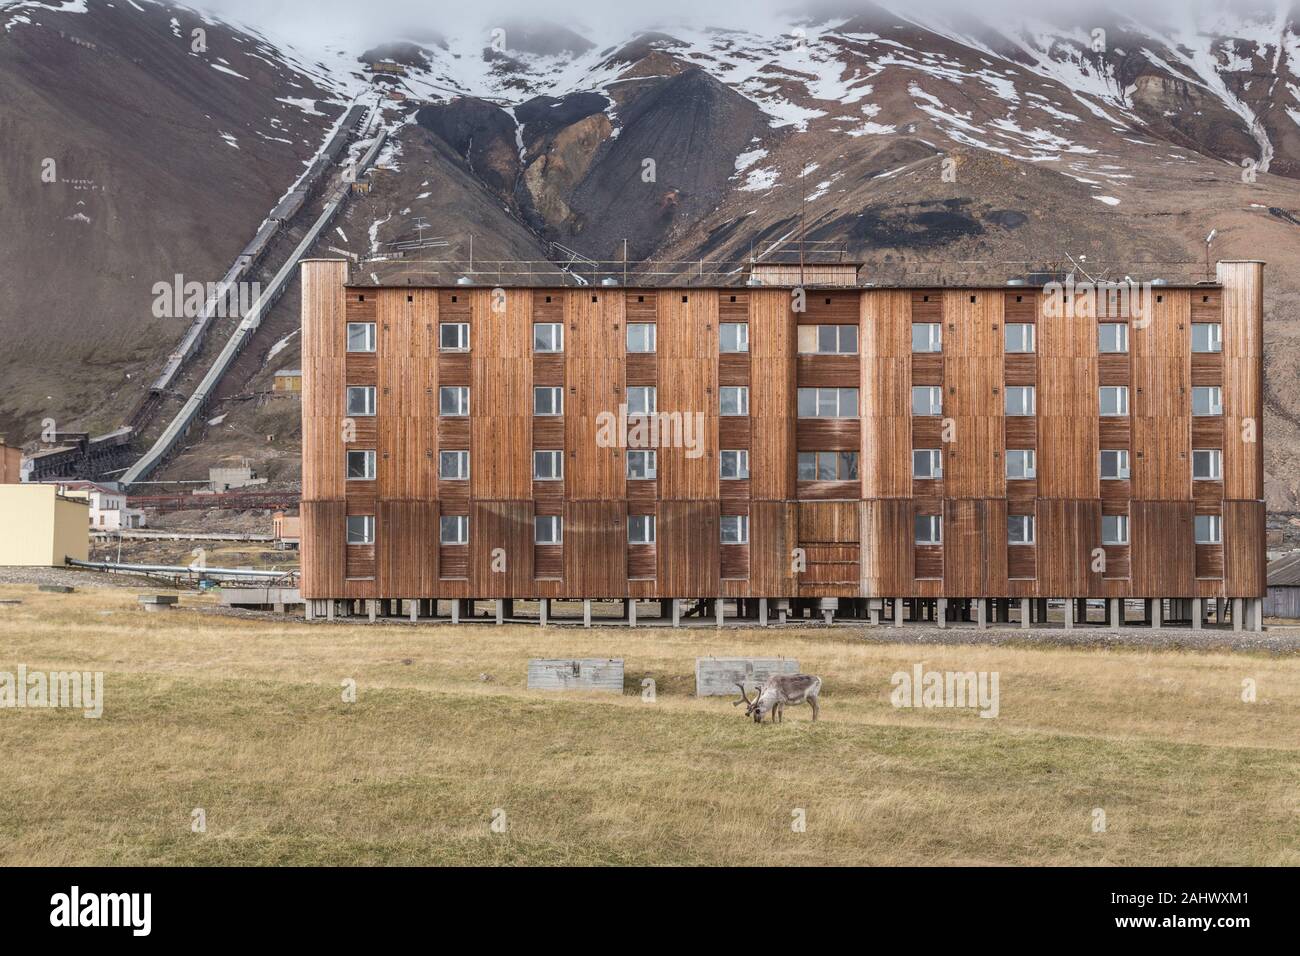 Pyramiden, une fédération de l'extraction du charbon sur le règlement sur le Spitzberg, archipel norvégien de Svalbard dans l'Arctique, a été fermée en 1998 Banque D'Images